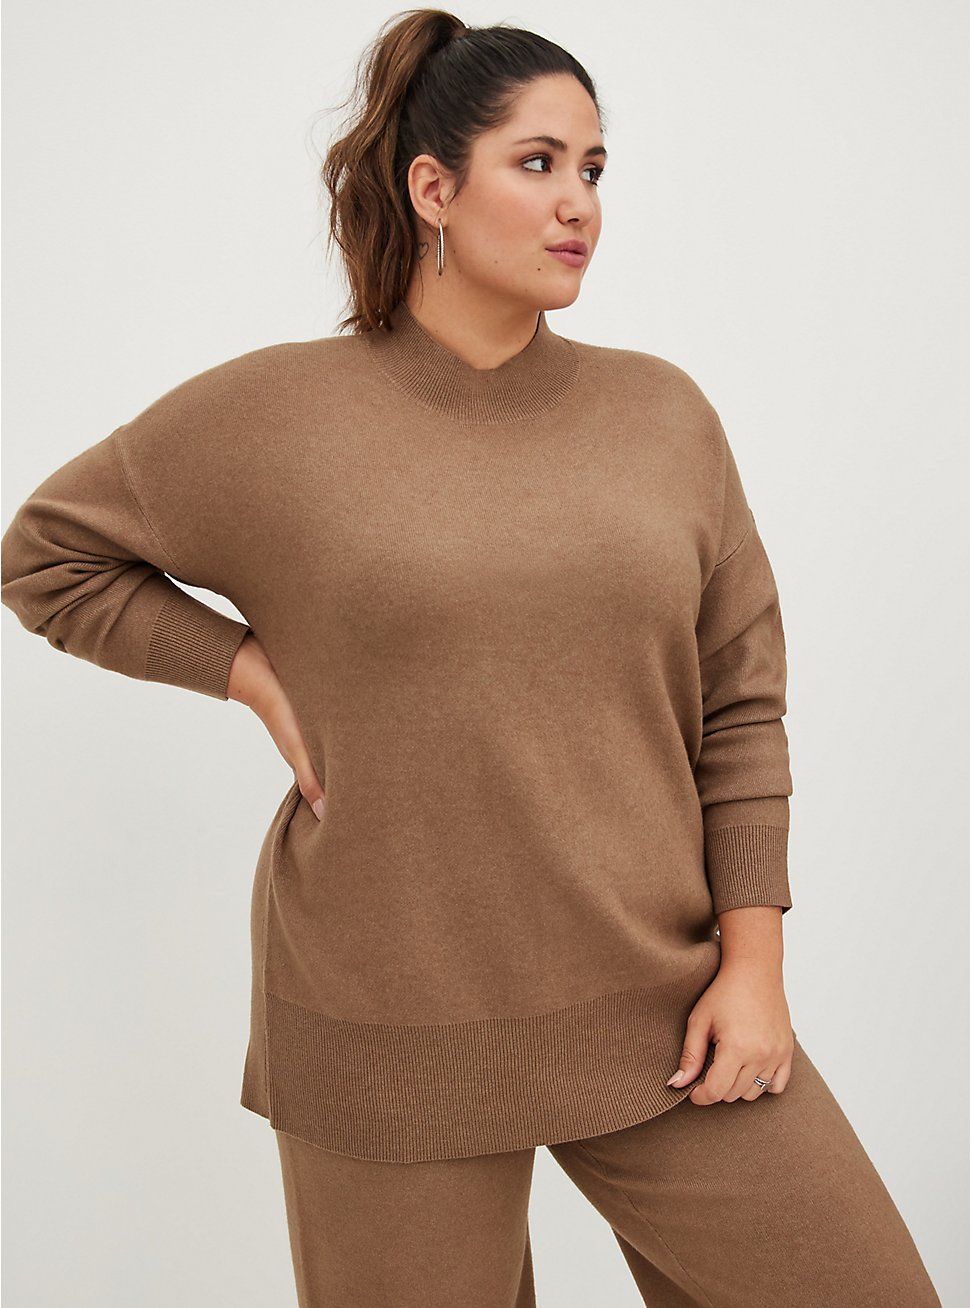 Drop Shoulder Sweater - Luxe Cozy Brown , TAN/BEIGE, hi-res